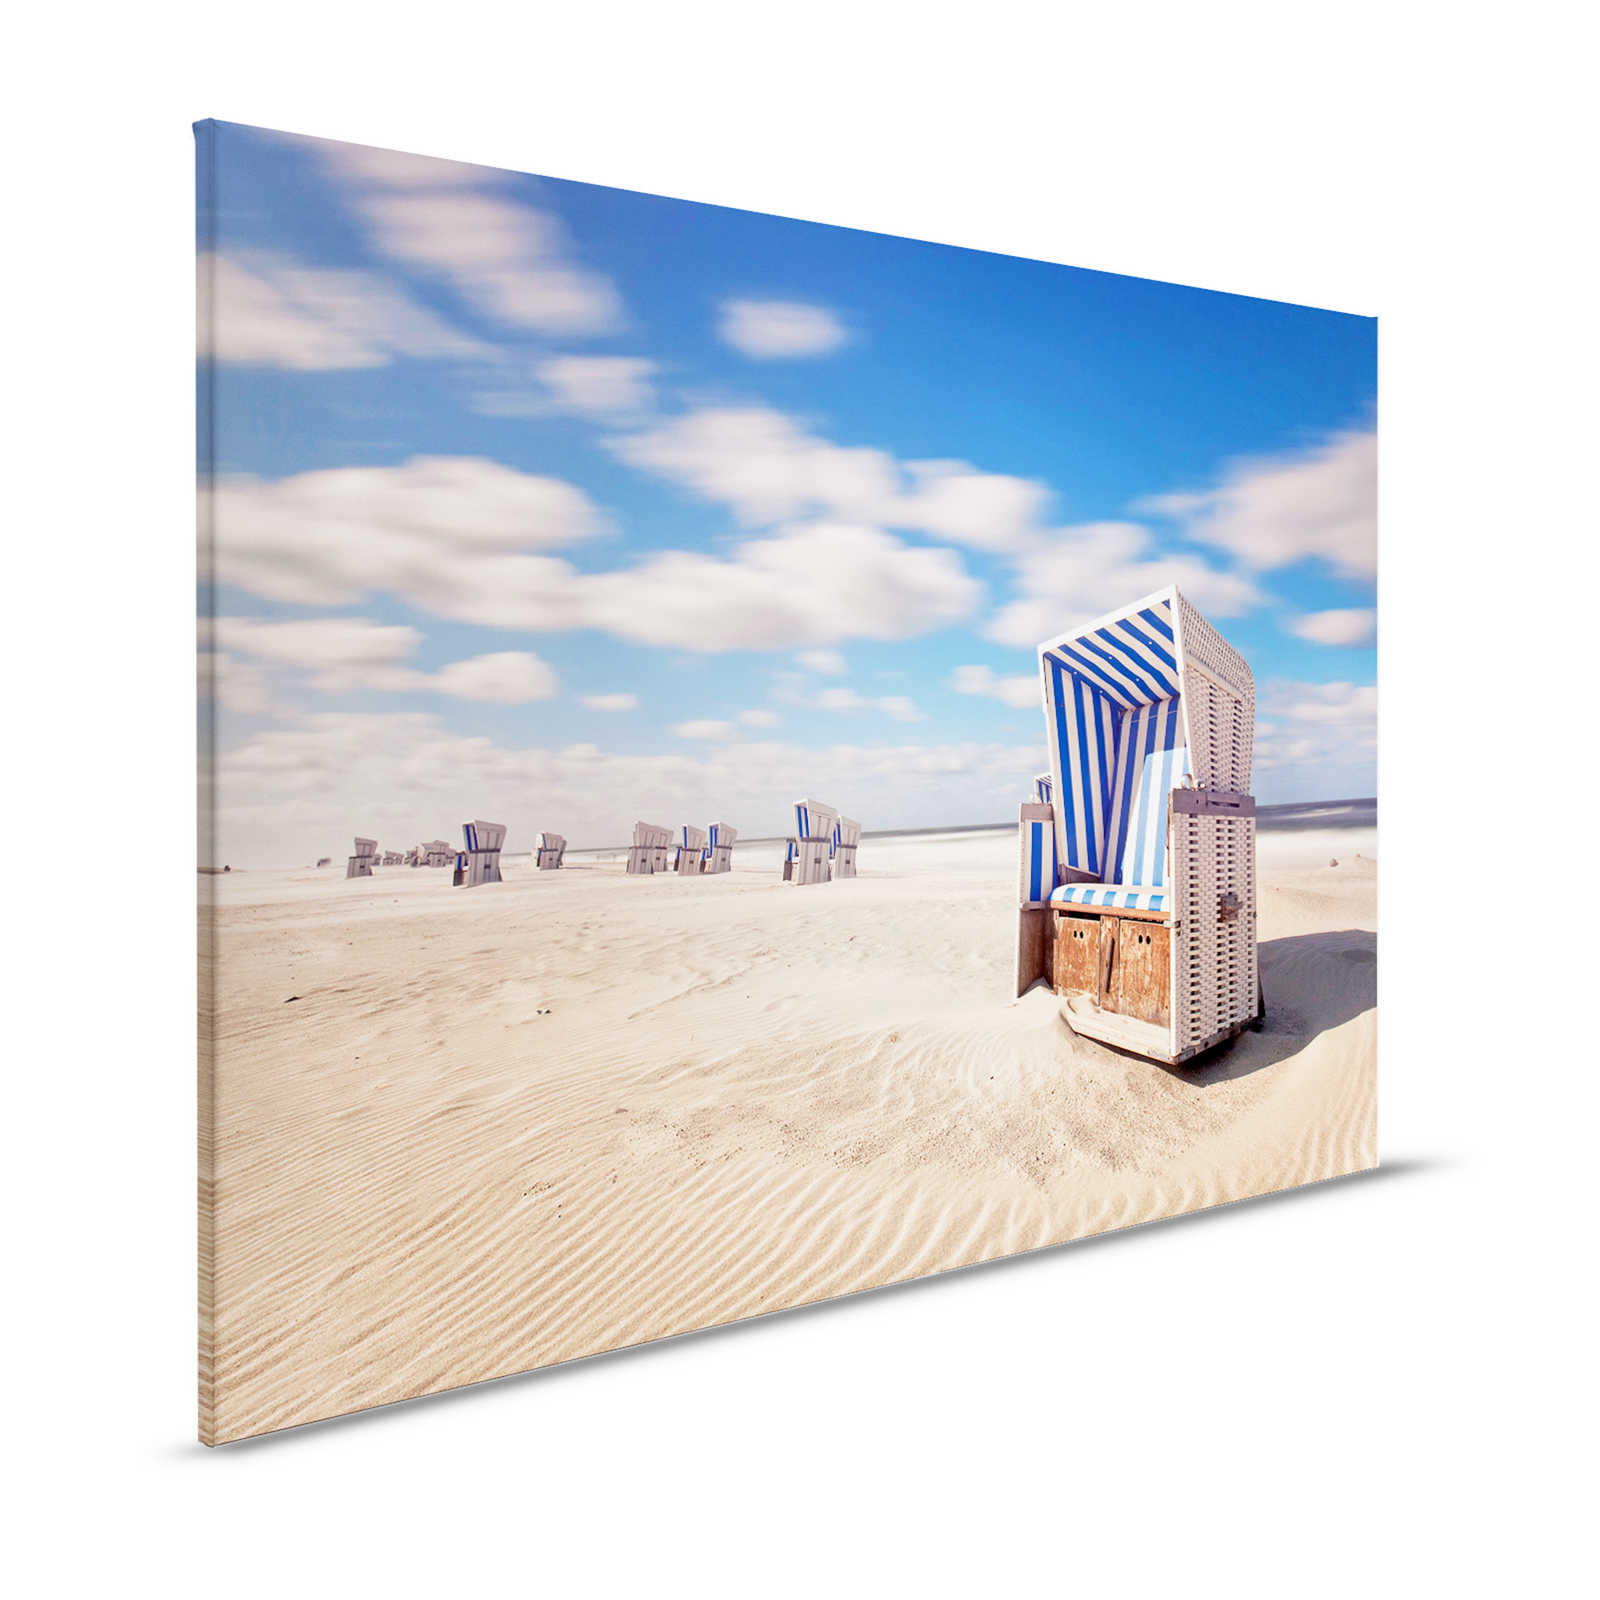 Sedia da spiaggia su tela dipinta Spiaggia con cielo e nuvole - 1,20 m x 0,80 m
